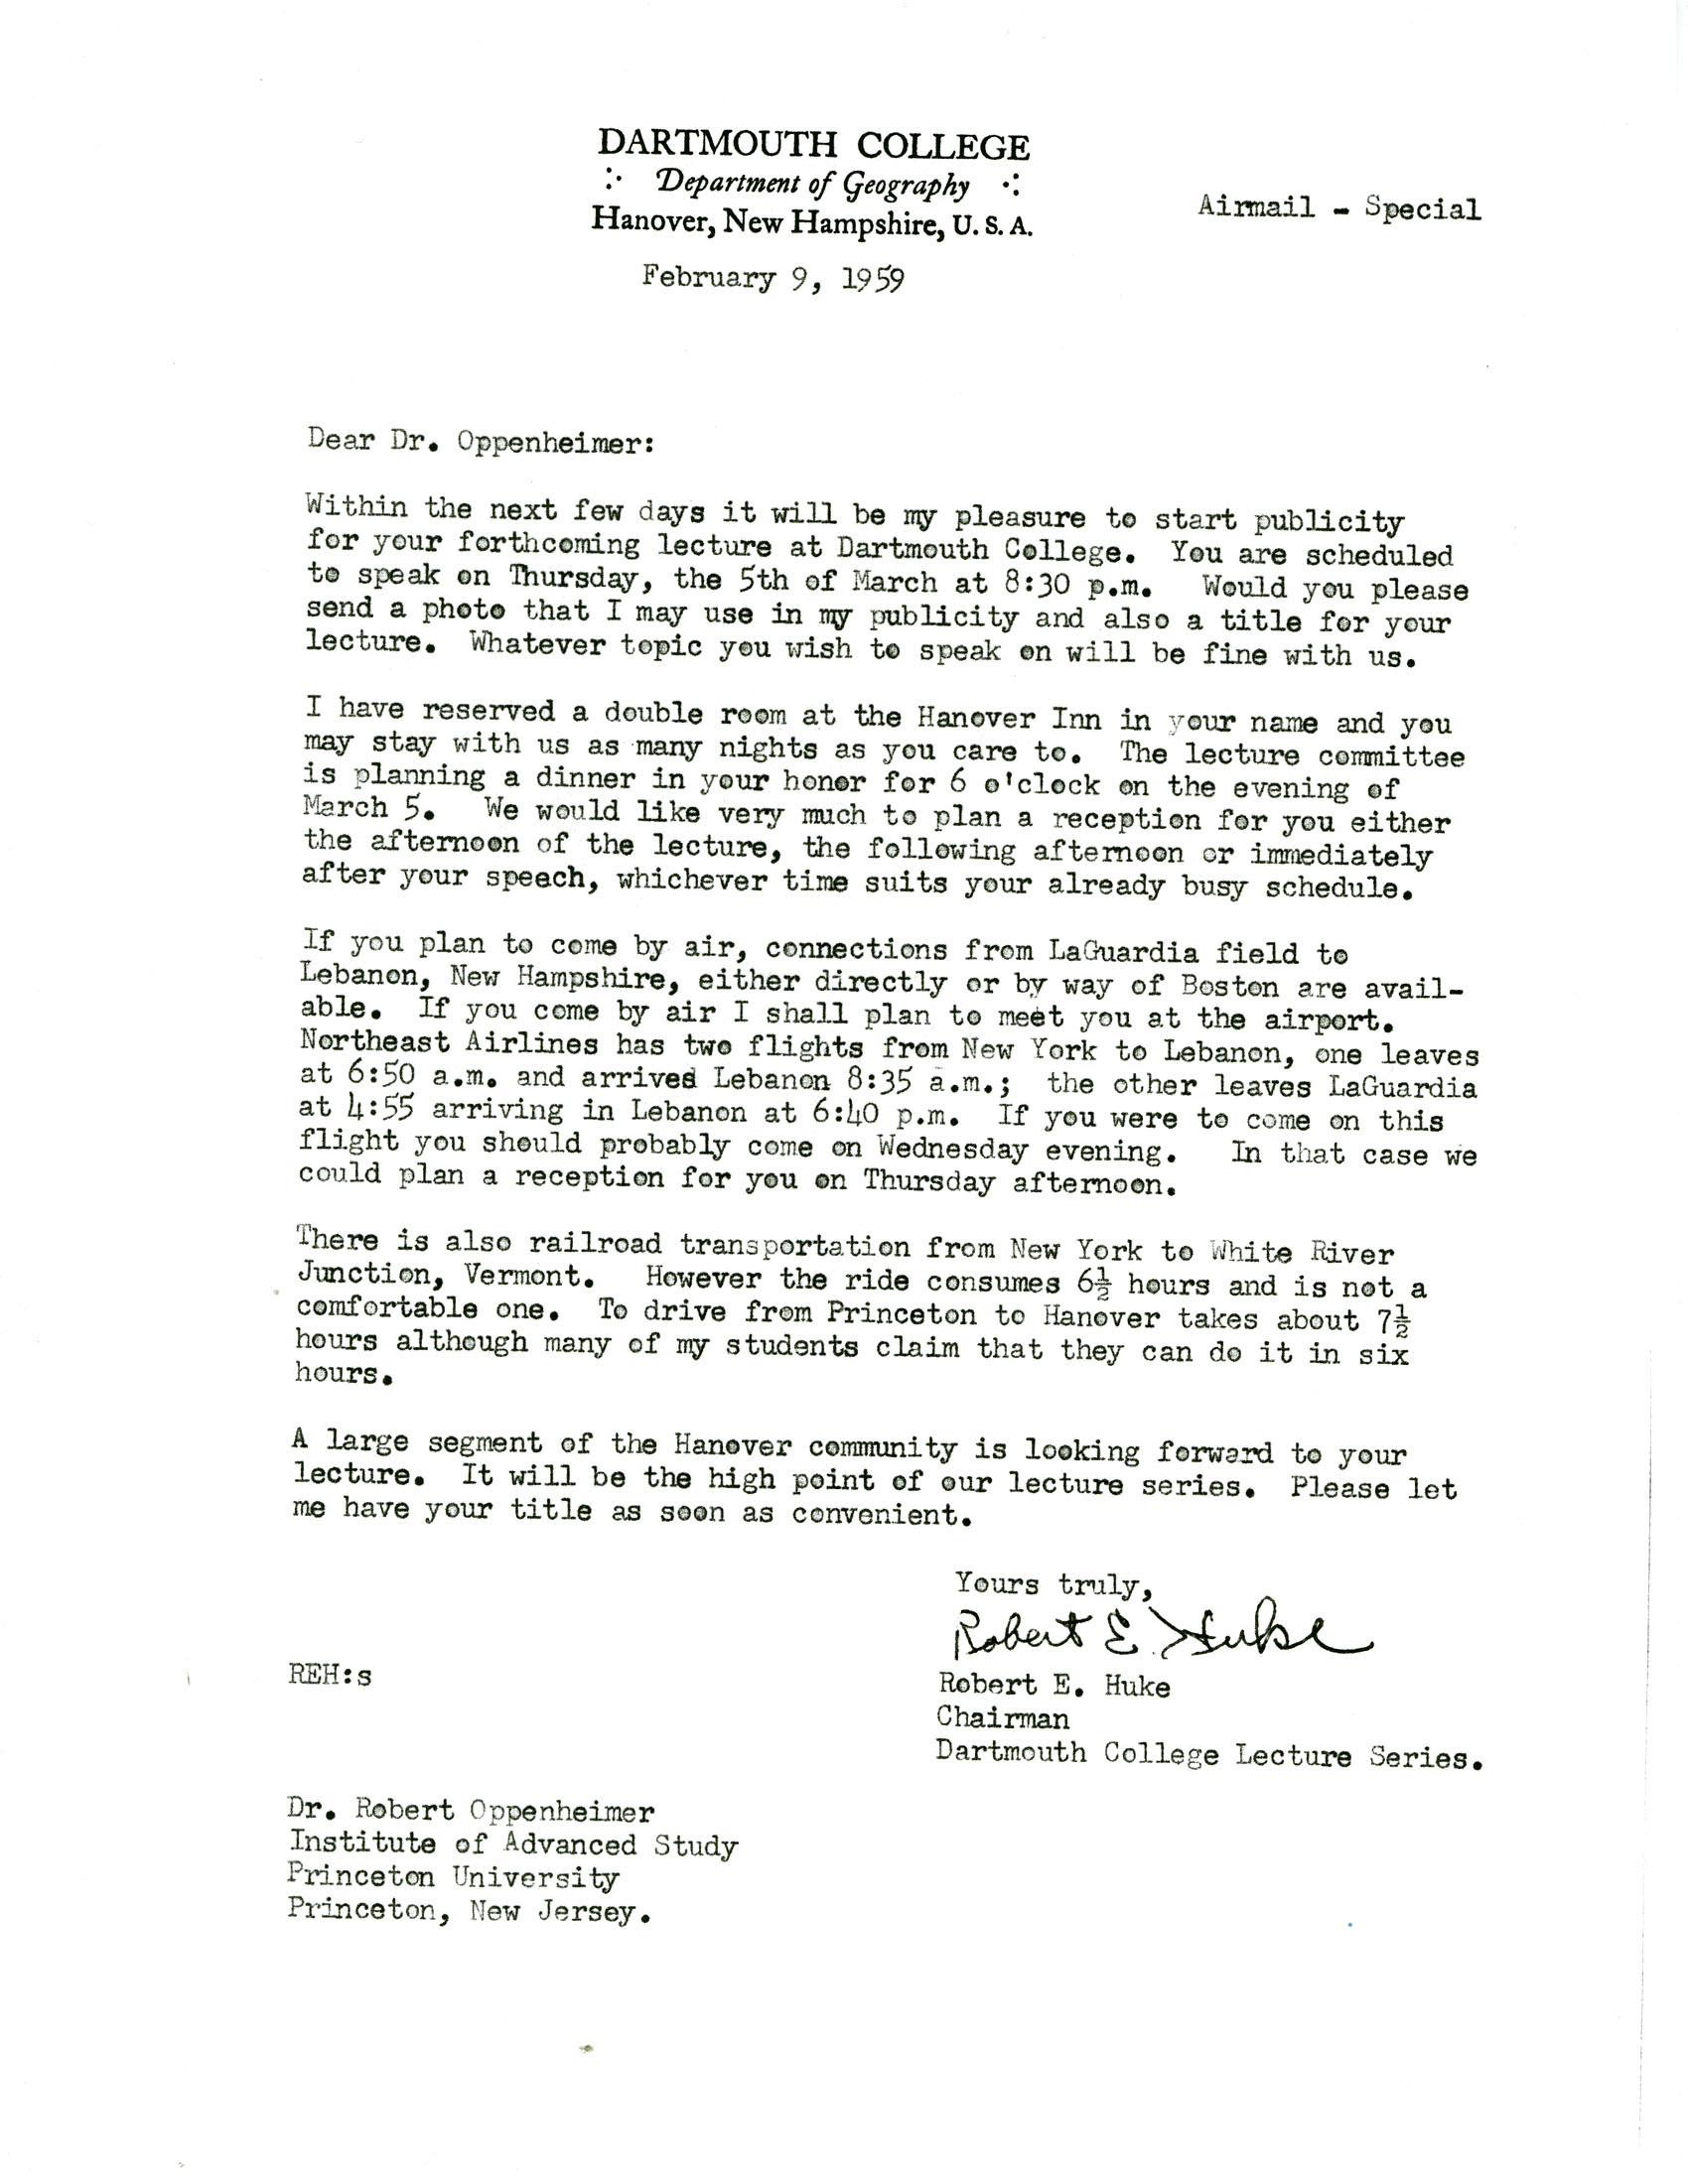 Letter from Robert Huke, Dartmouth College, to Robert Oppenheimer ...